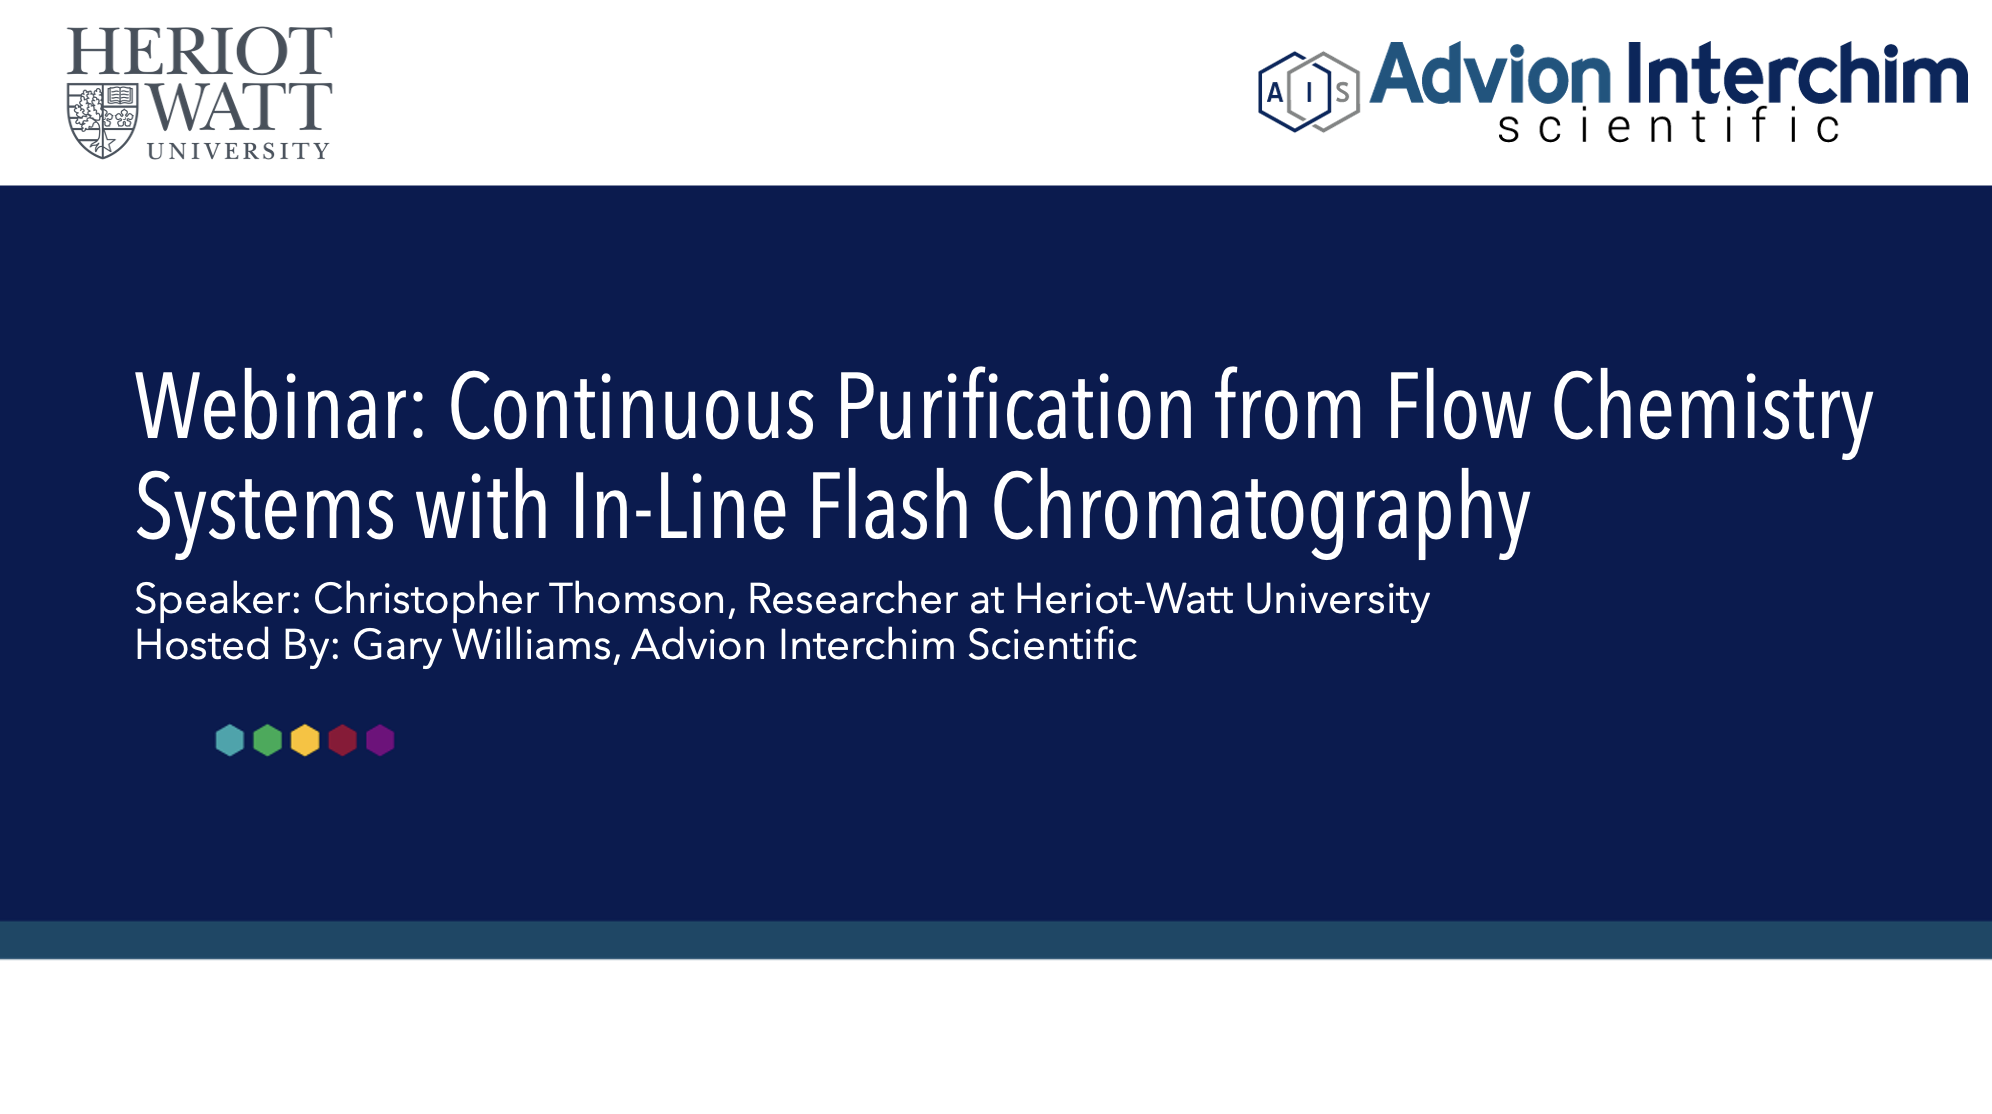 Purification continue à partir de systèmes de chimie en flux avec chromatographie flash en ligne